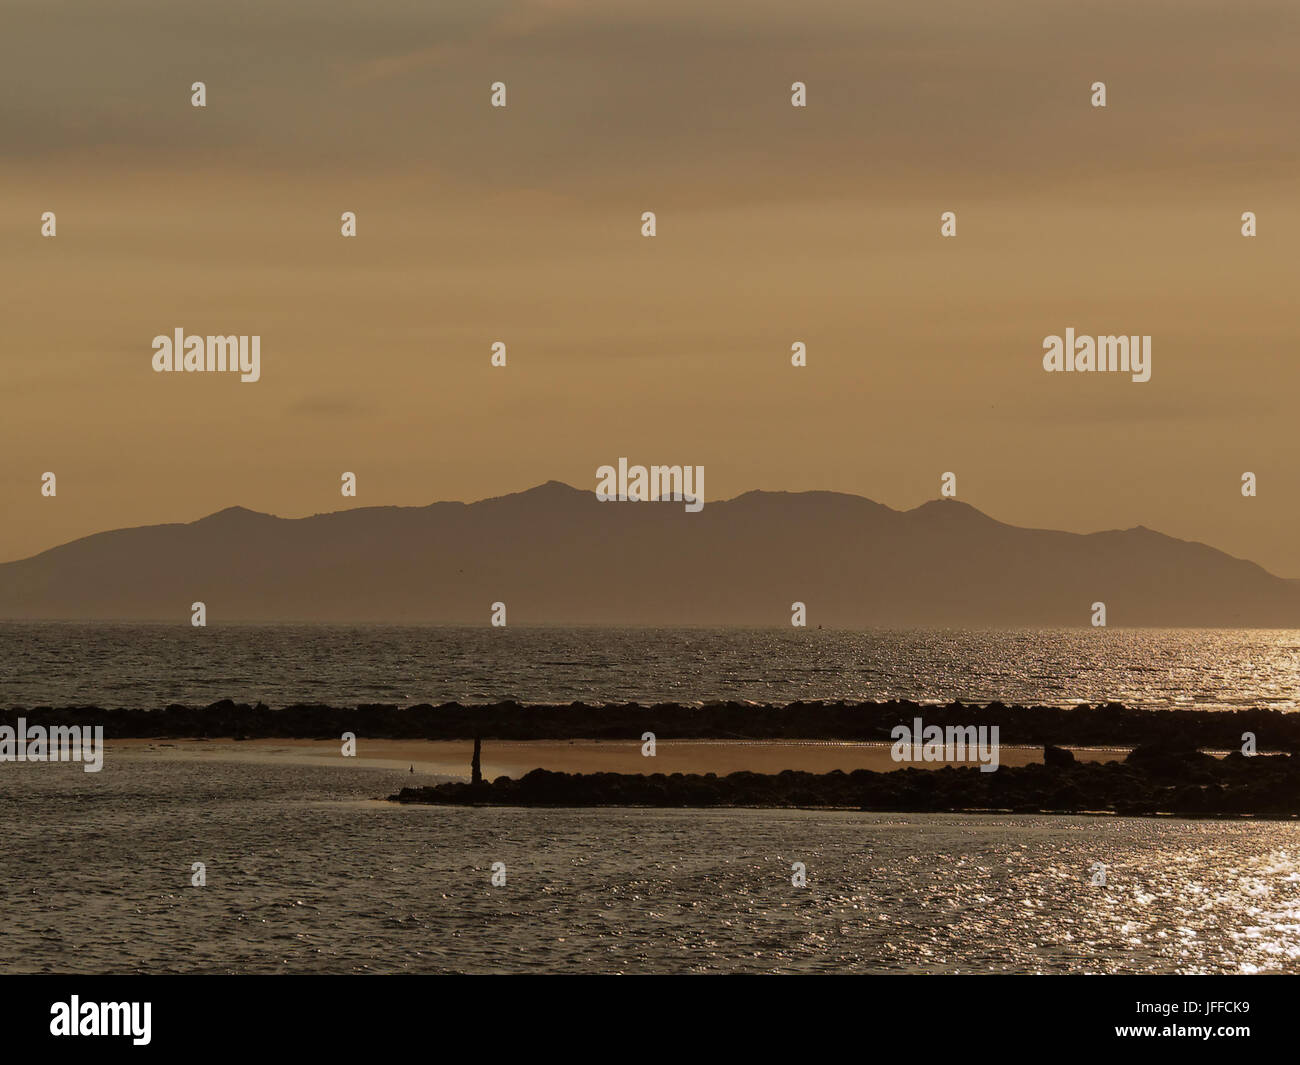 Isola di Arran al crepuscolo da Ayr Beach sunset pensato da molti come l'isola di Avalon della leggenda arturiana Foto Stock